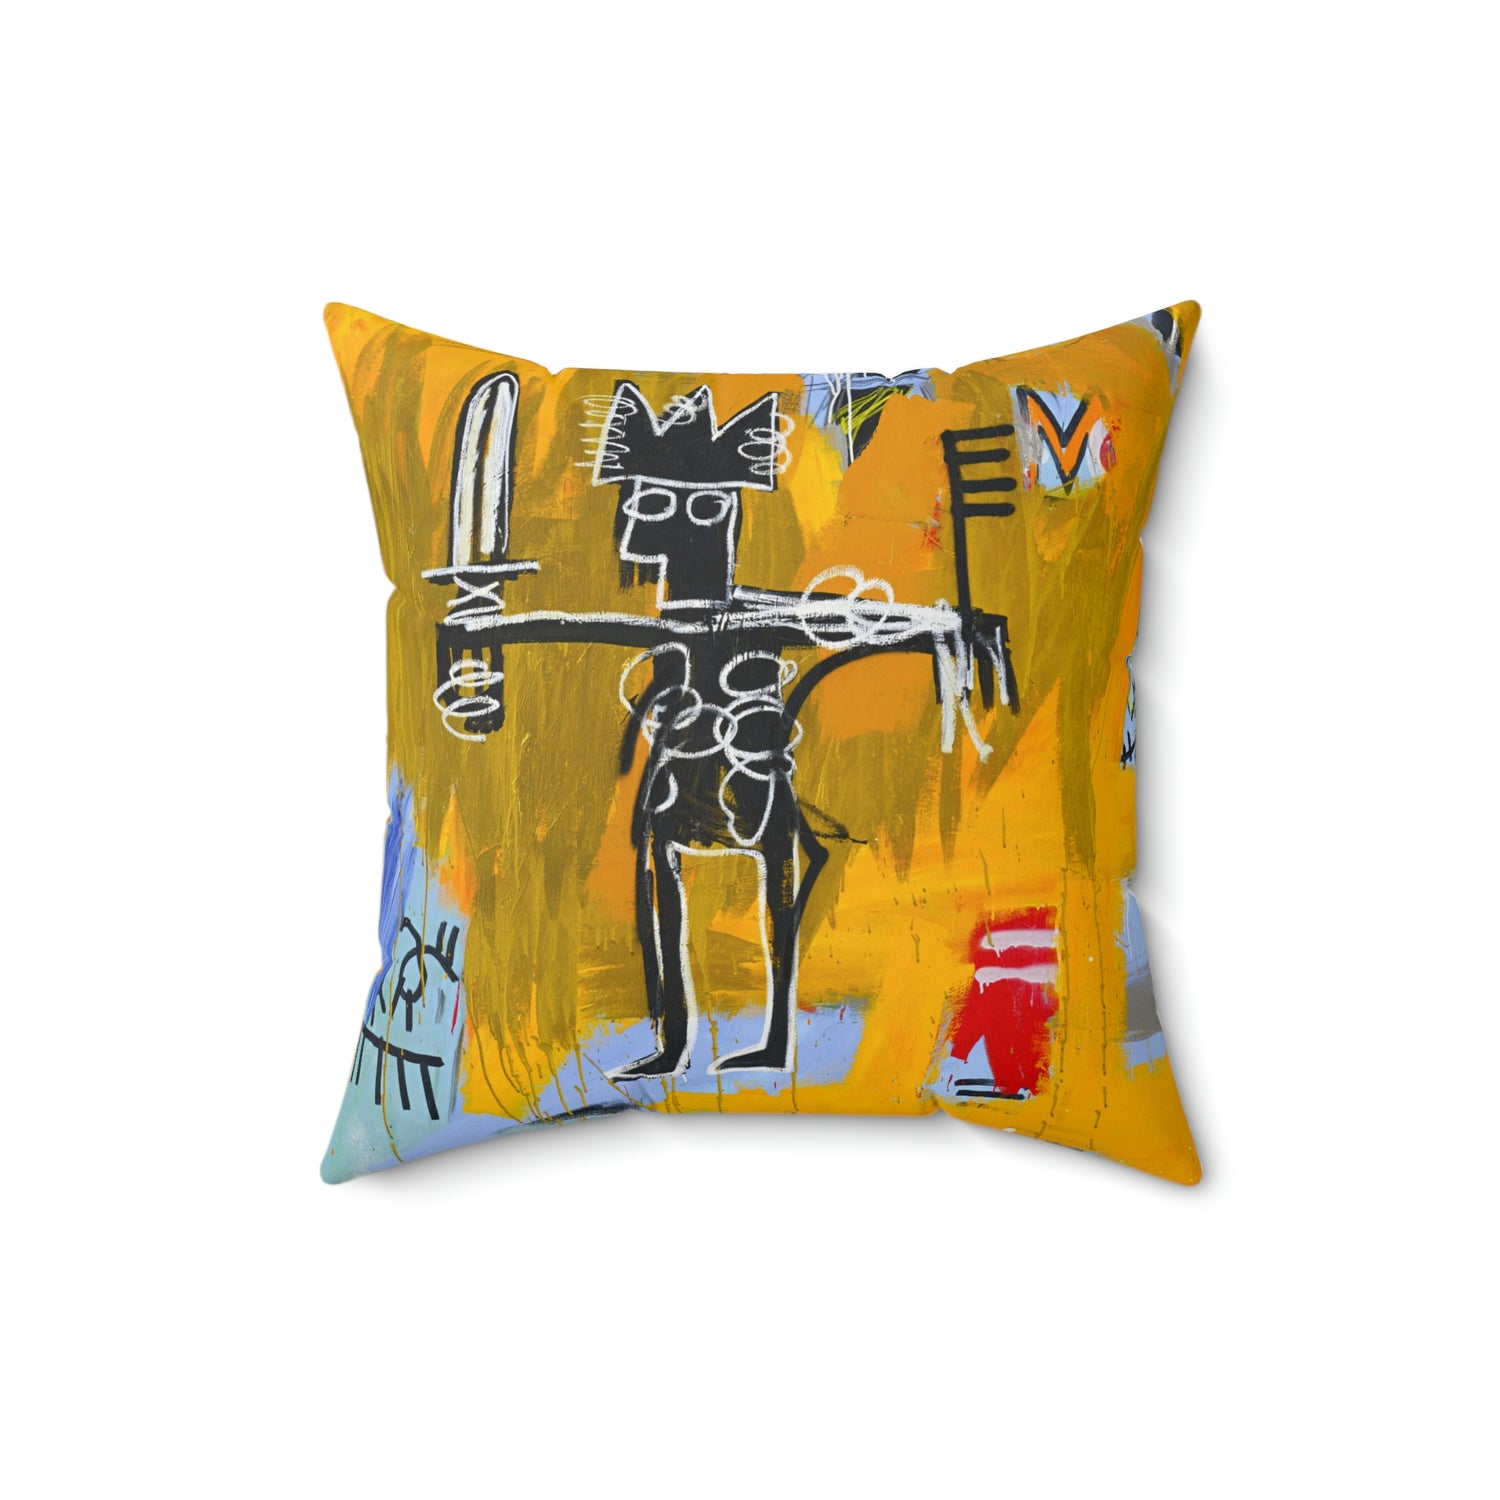 Jean-Michel Basquiat "Julius Caesar on Gold" Artwork Square Throw Pillow